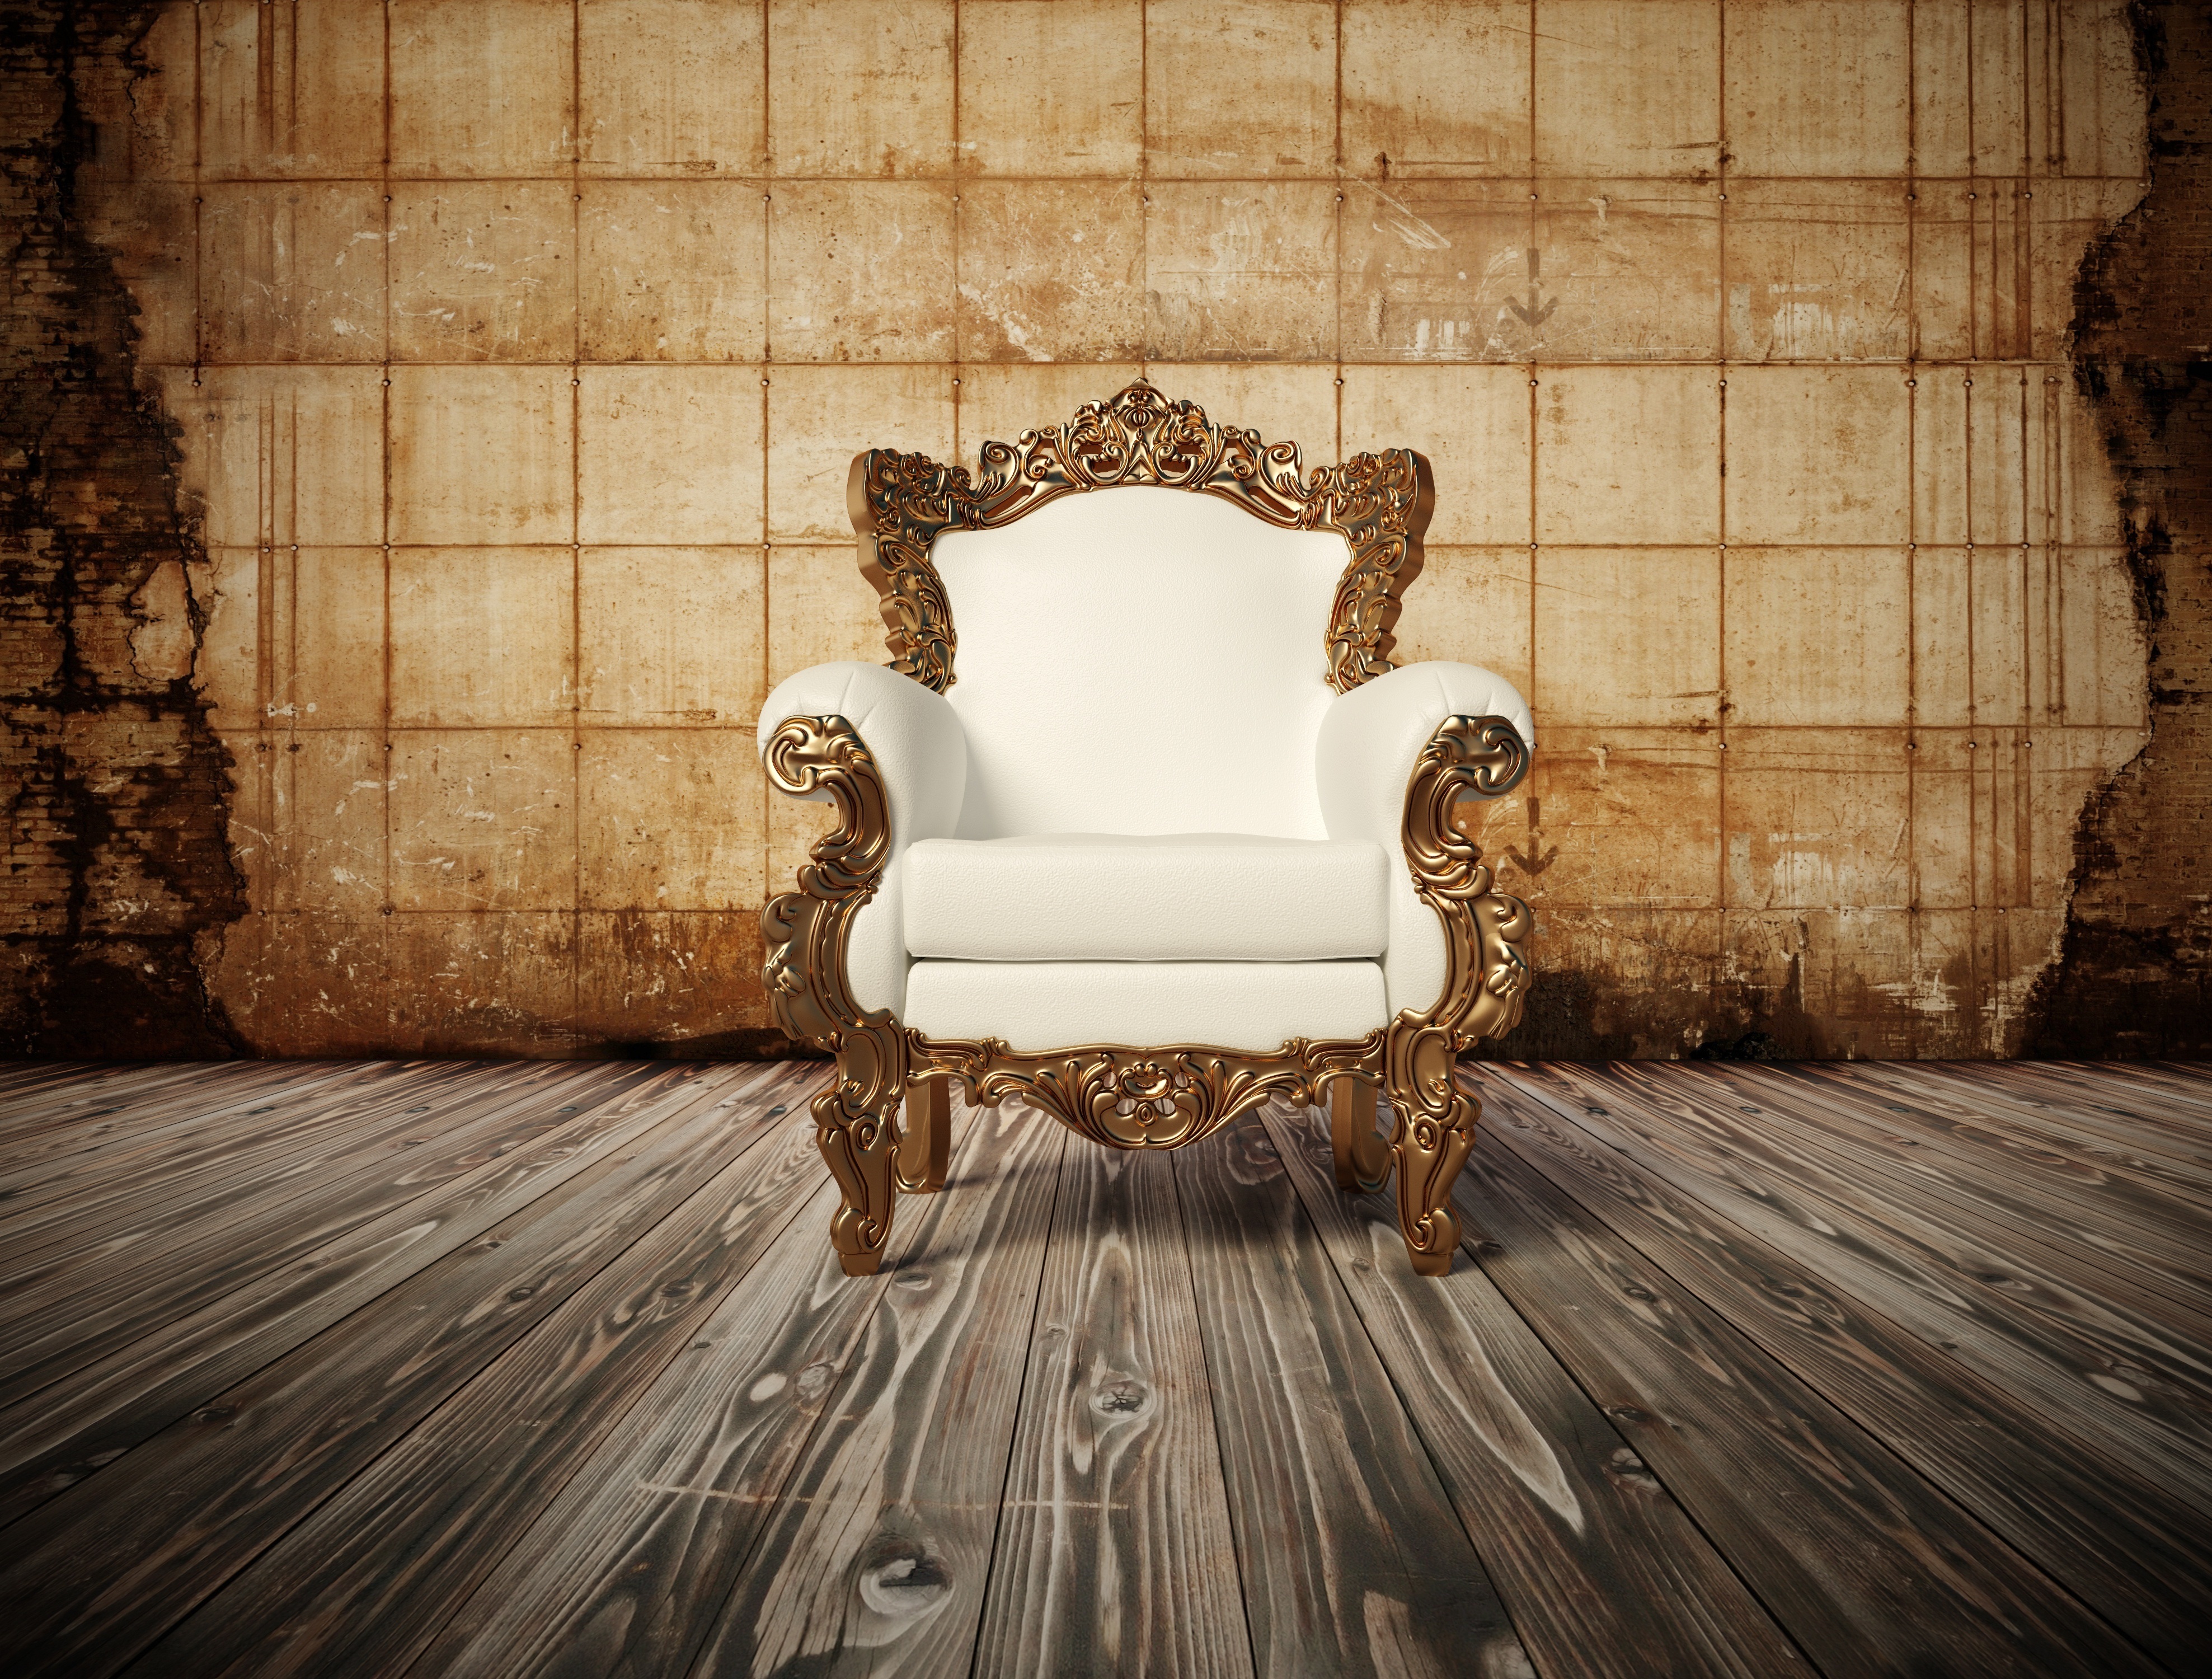 Лейбл кресла. Красивое кресло в комнате. Шикарное кресло. Кресло в интерьере. Фон интерьер.